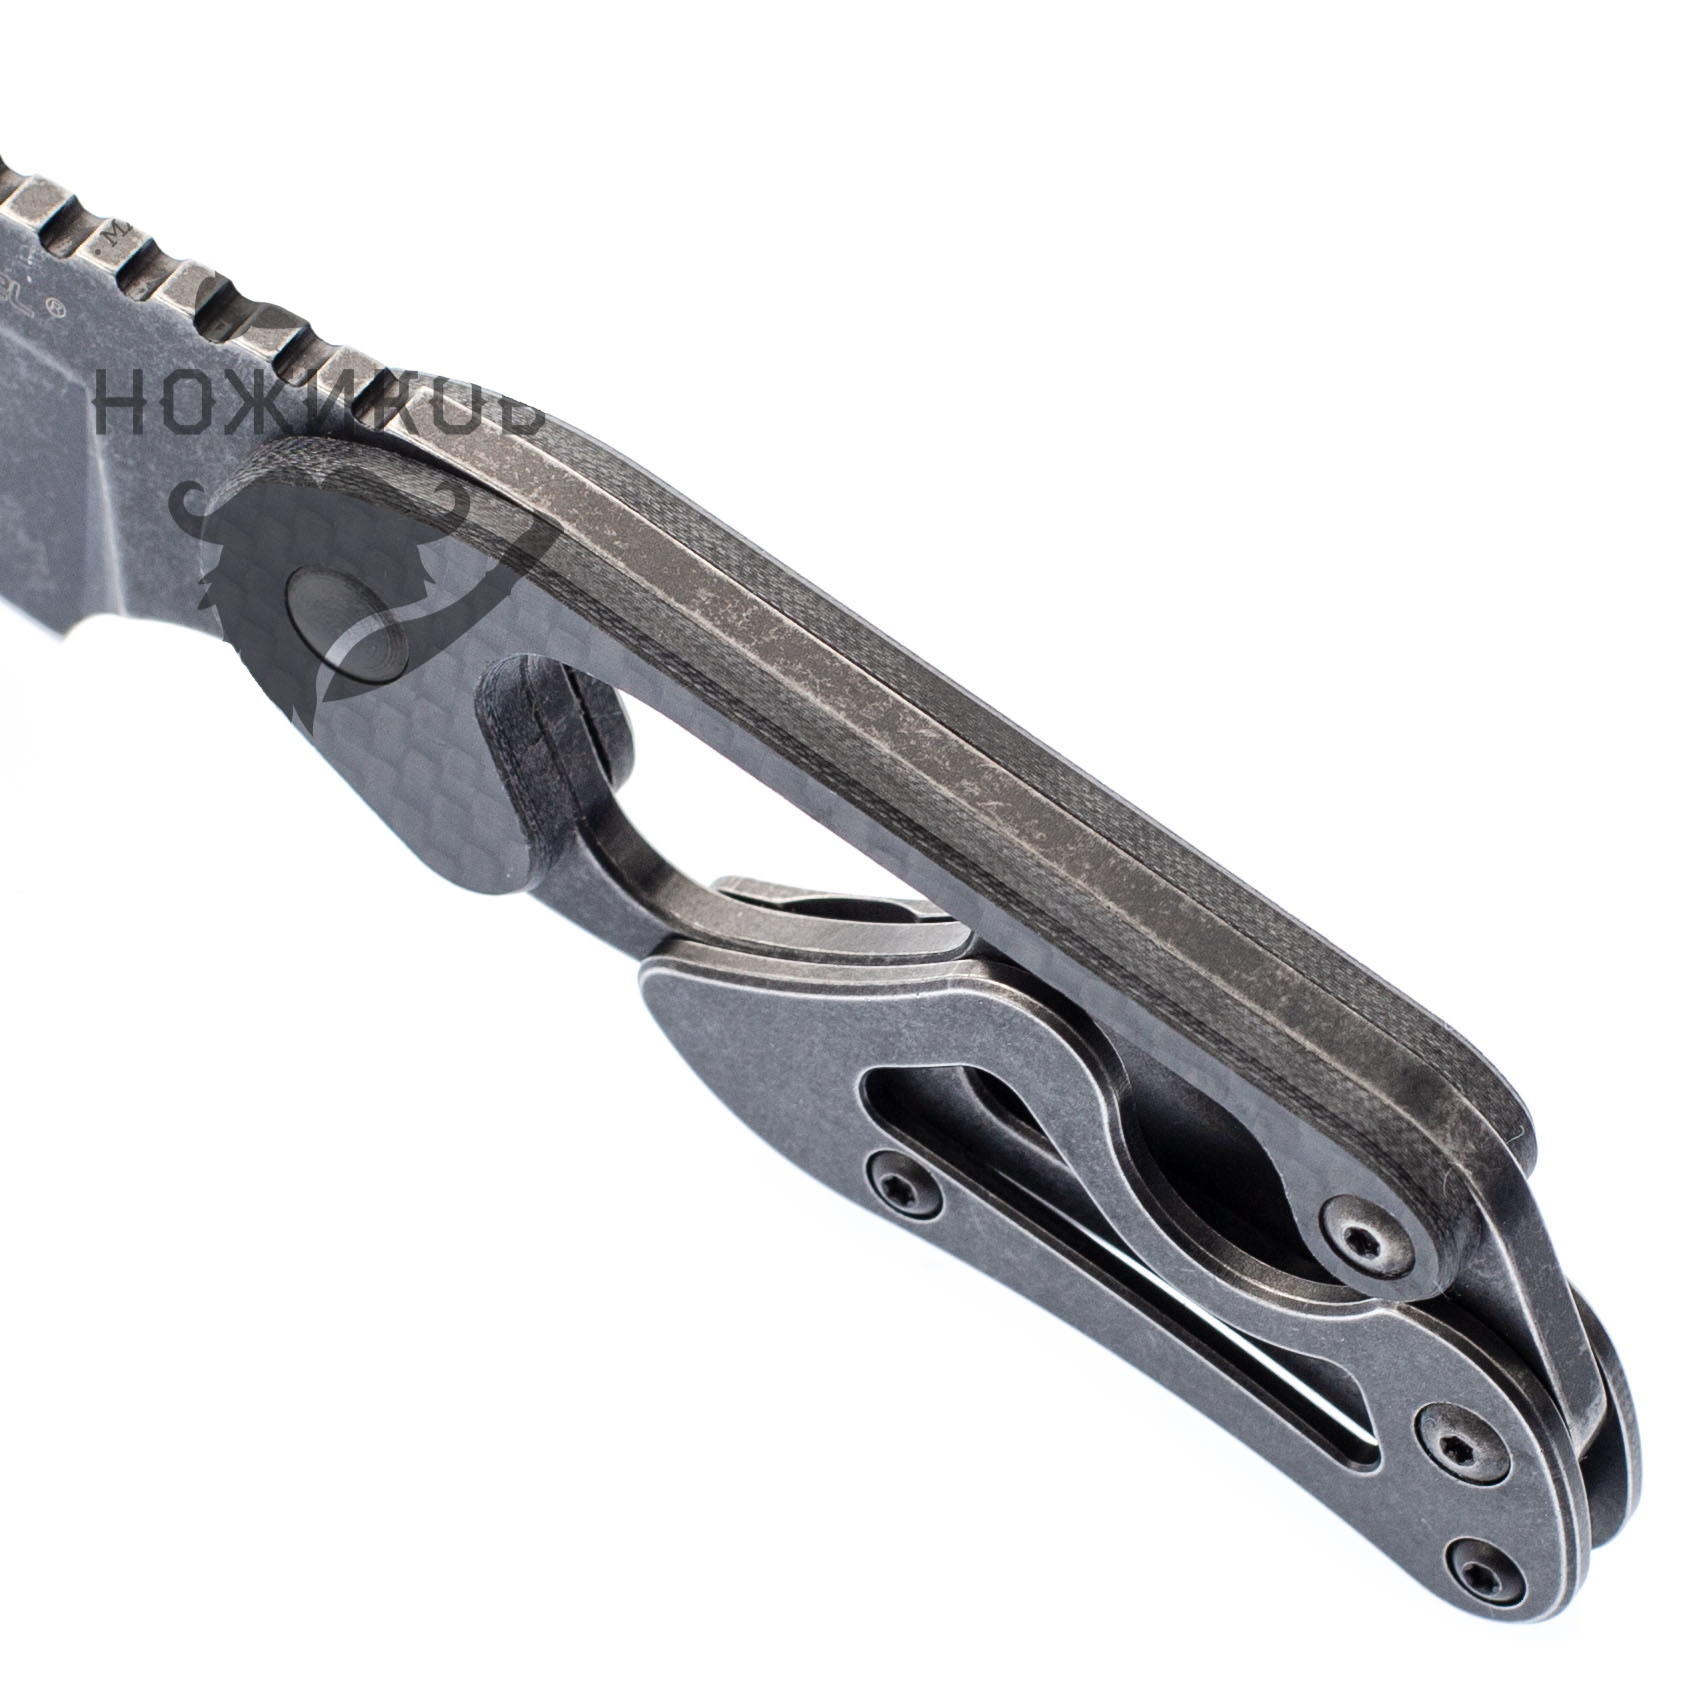 Шейный нож Cormorant Apex Blackwash Realsteel, сталь 14C28N - фото 3